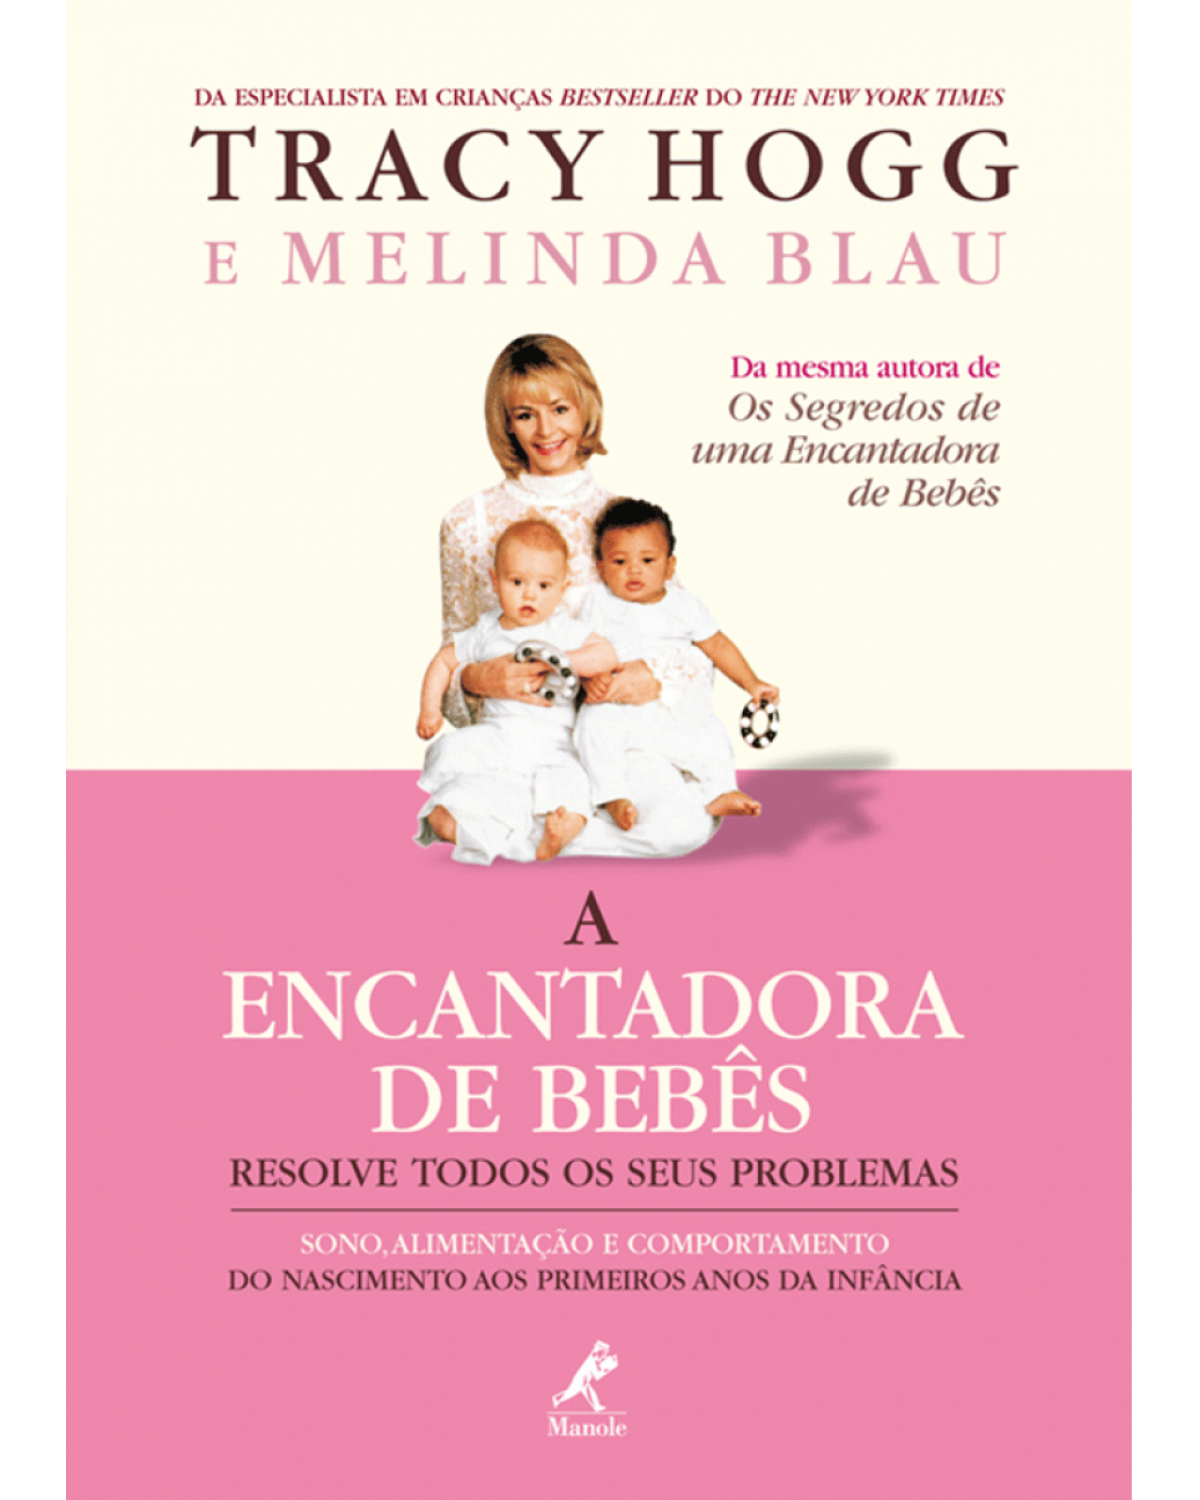 A encantadora de bebês resolve todos os seus problemas - Sono, alimentação e comportamento do nascimento aos primeiros anos da infância - 1ª Edição | 2006